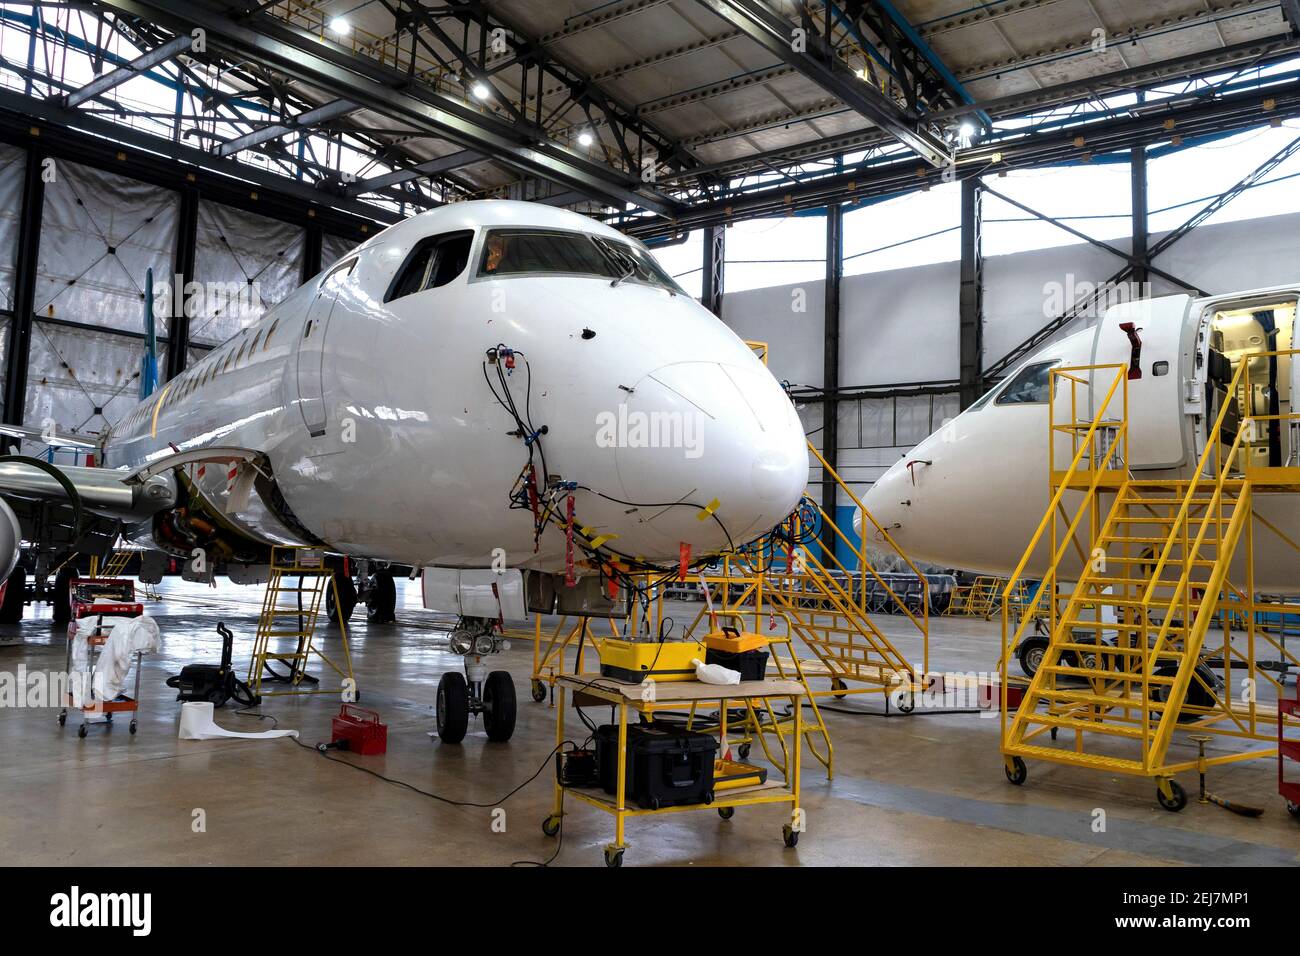 L'aereo è nell'hangar per la riparazione tecnica e la manutenzione. Diagnostica, stoccaggio, assistenza aeromobili. Piano. Scale per meccanica. Foto Stock